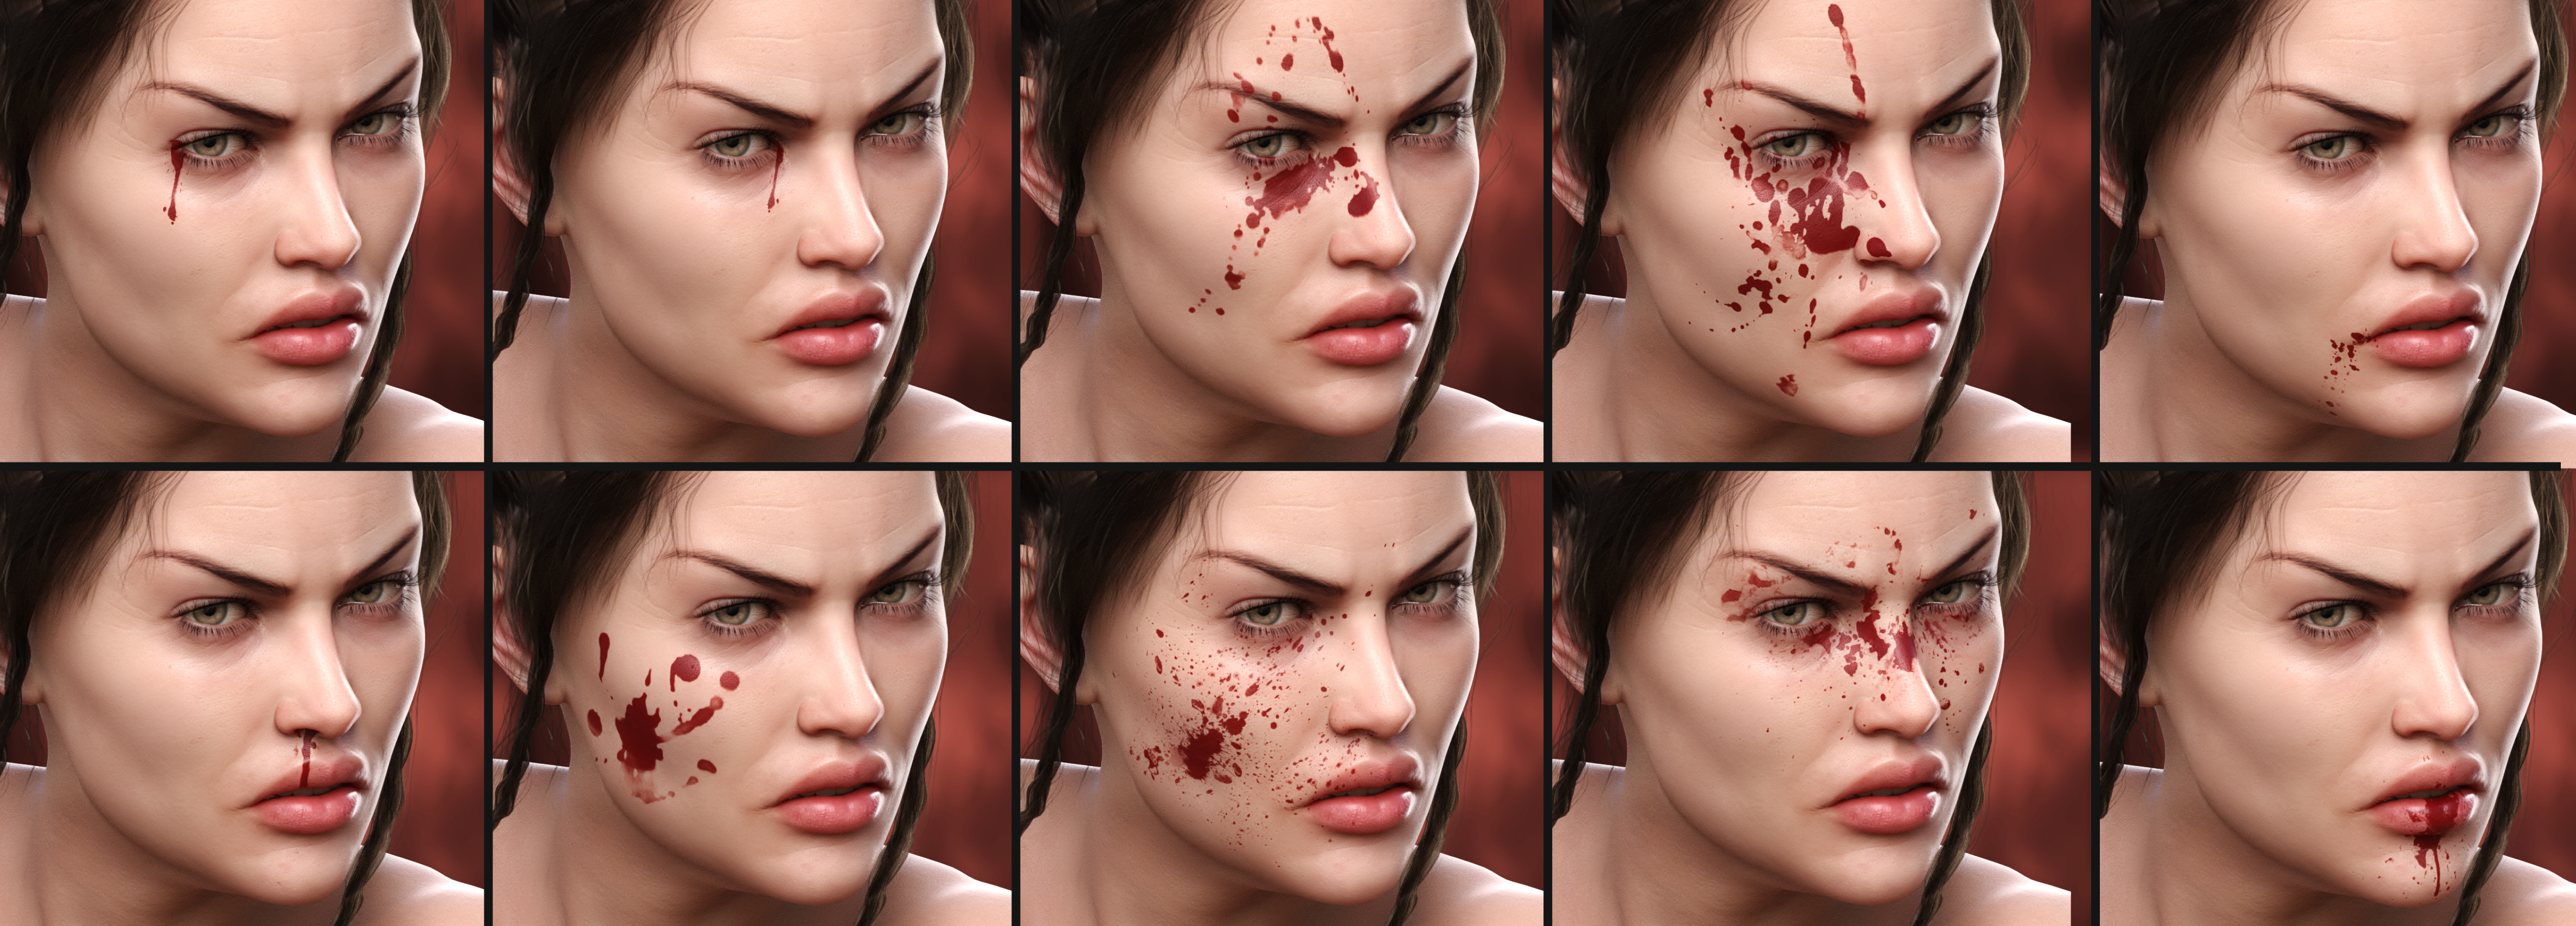 Blood Splash for Genesis 8 by: Neikdian, 3D Models by Daz 3D